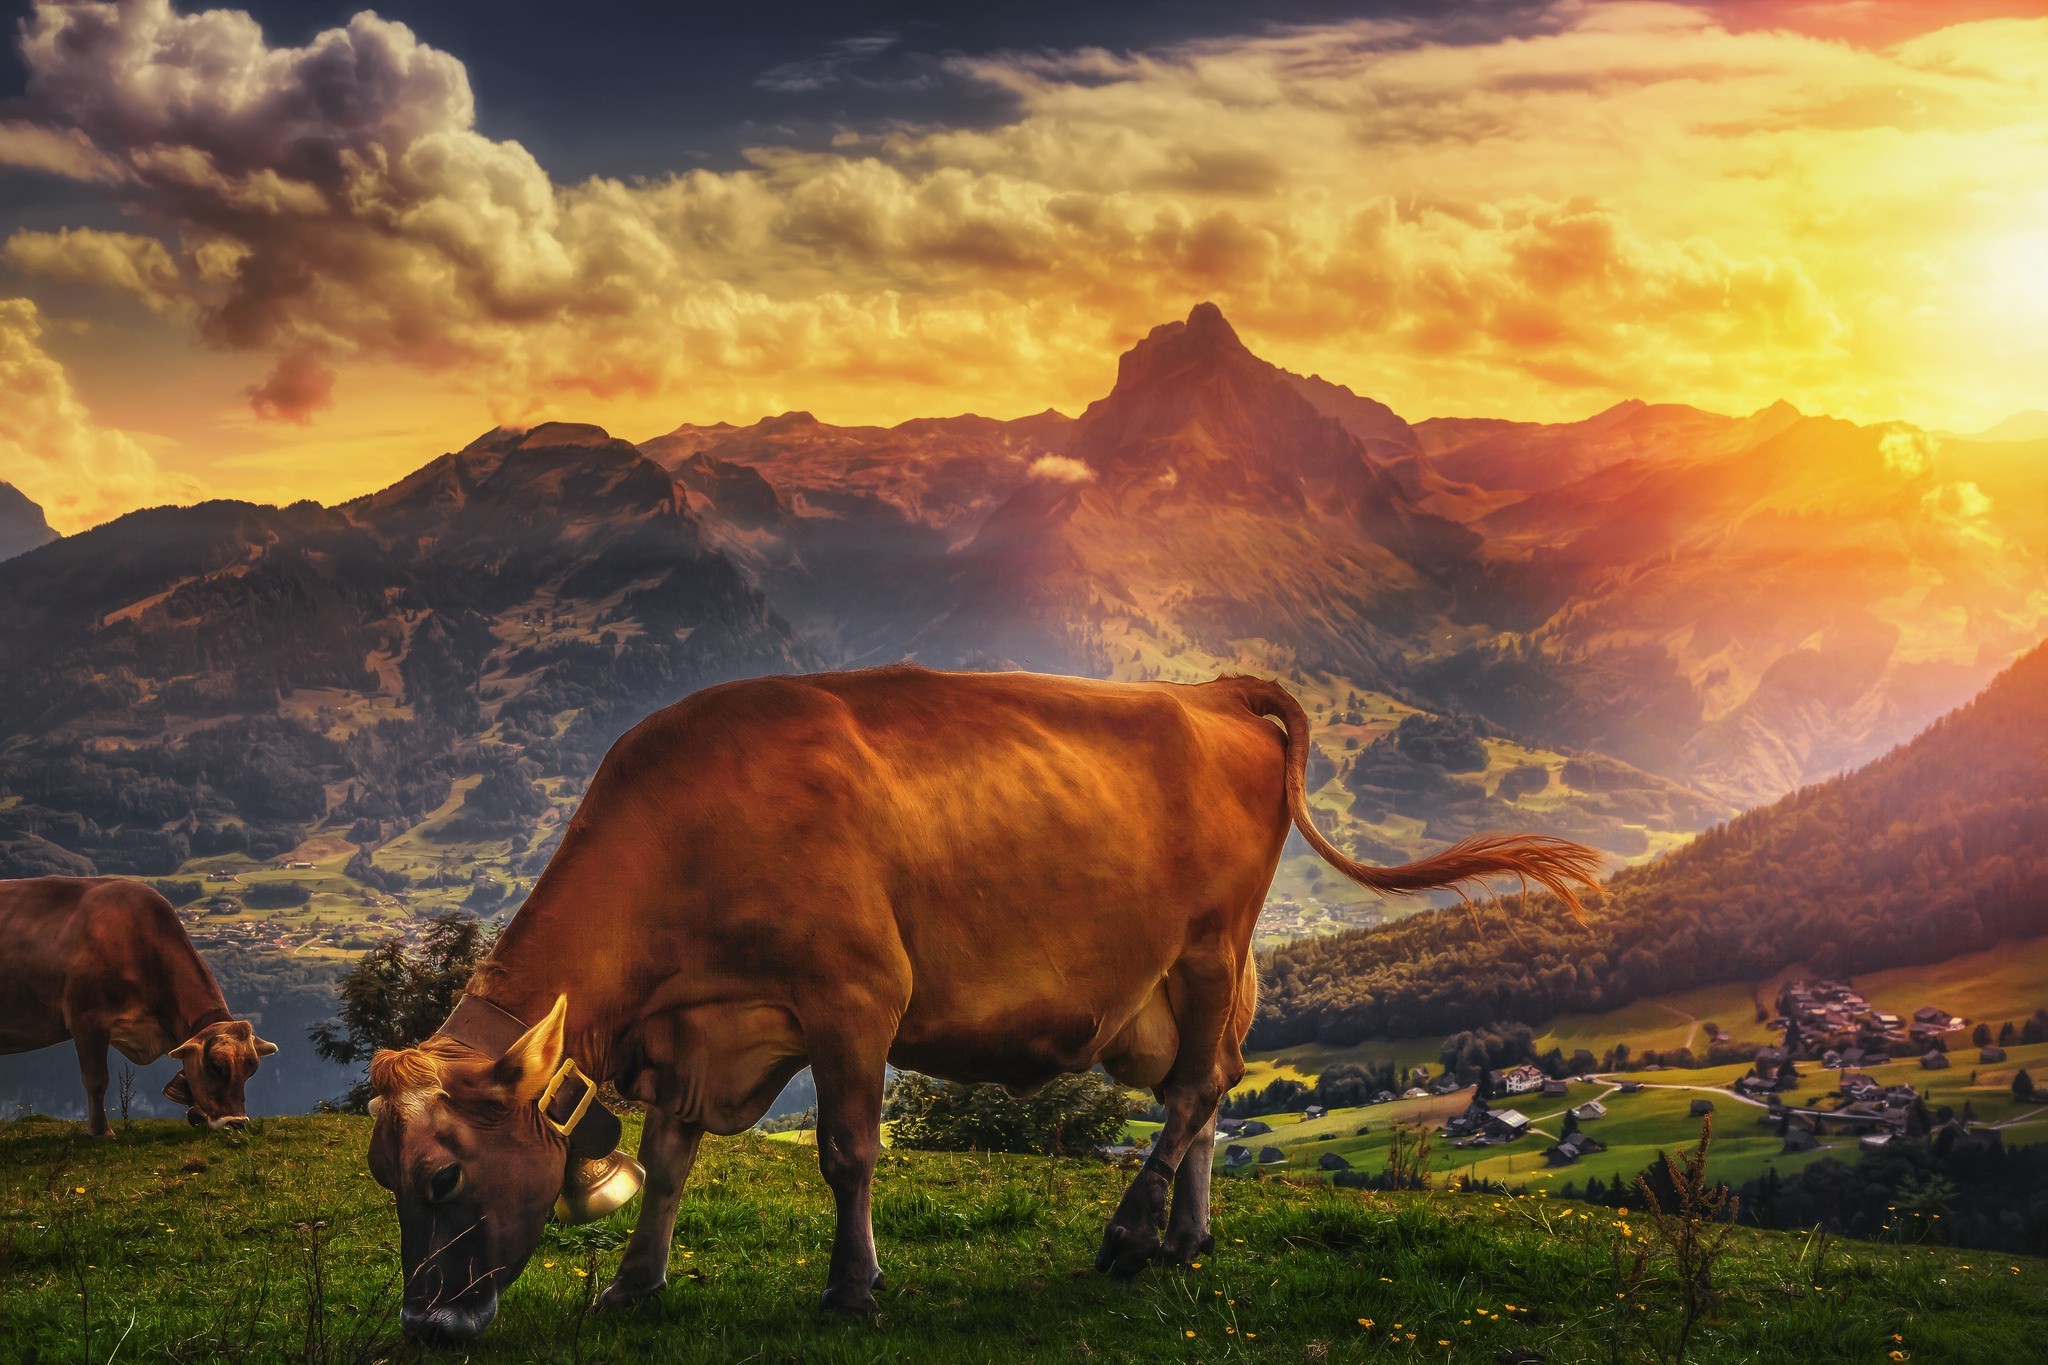 landscape mountains sun sunlight rocks cows bell clouds grass Wallpaper